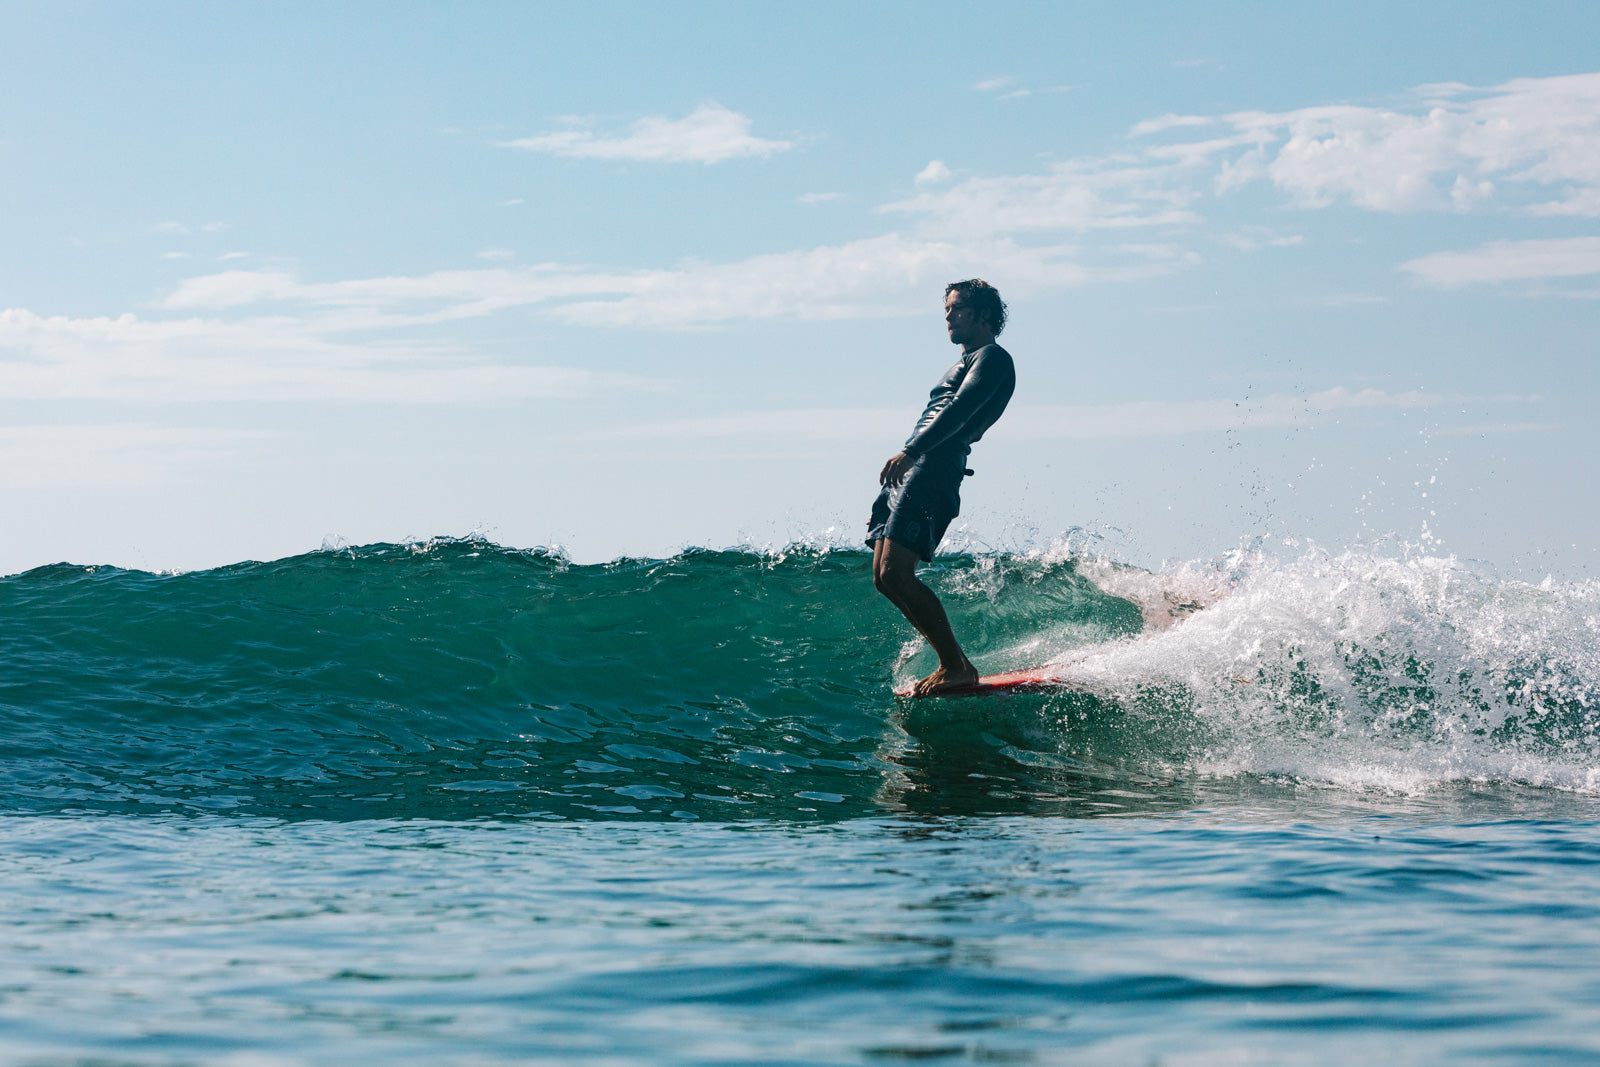 Le surfeur Katin Saxon Wilson démontre l'art du noseriding avec facilité à Malibu, 2020. Photo d'Edin Markulin.